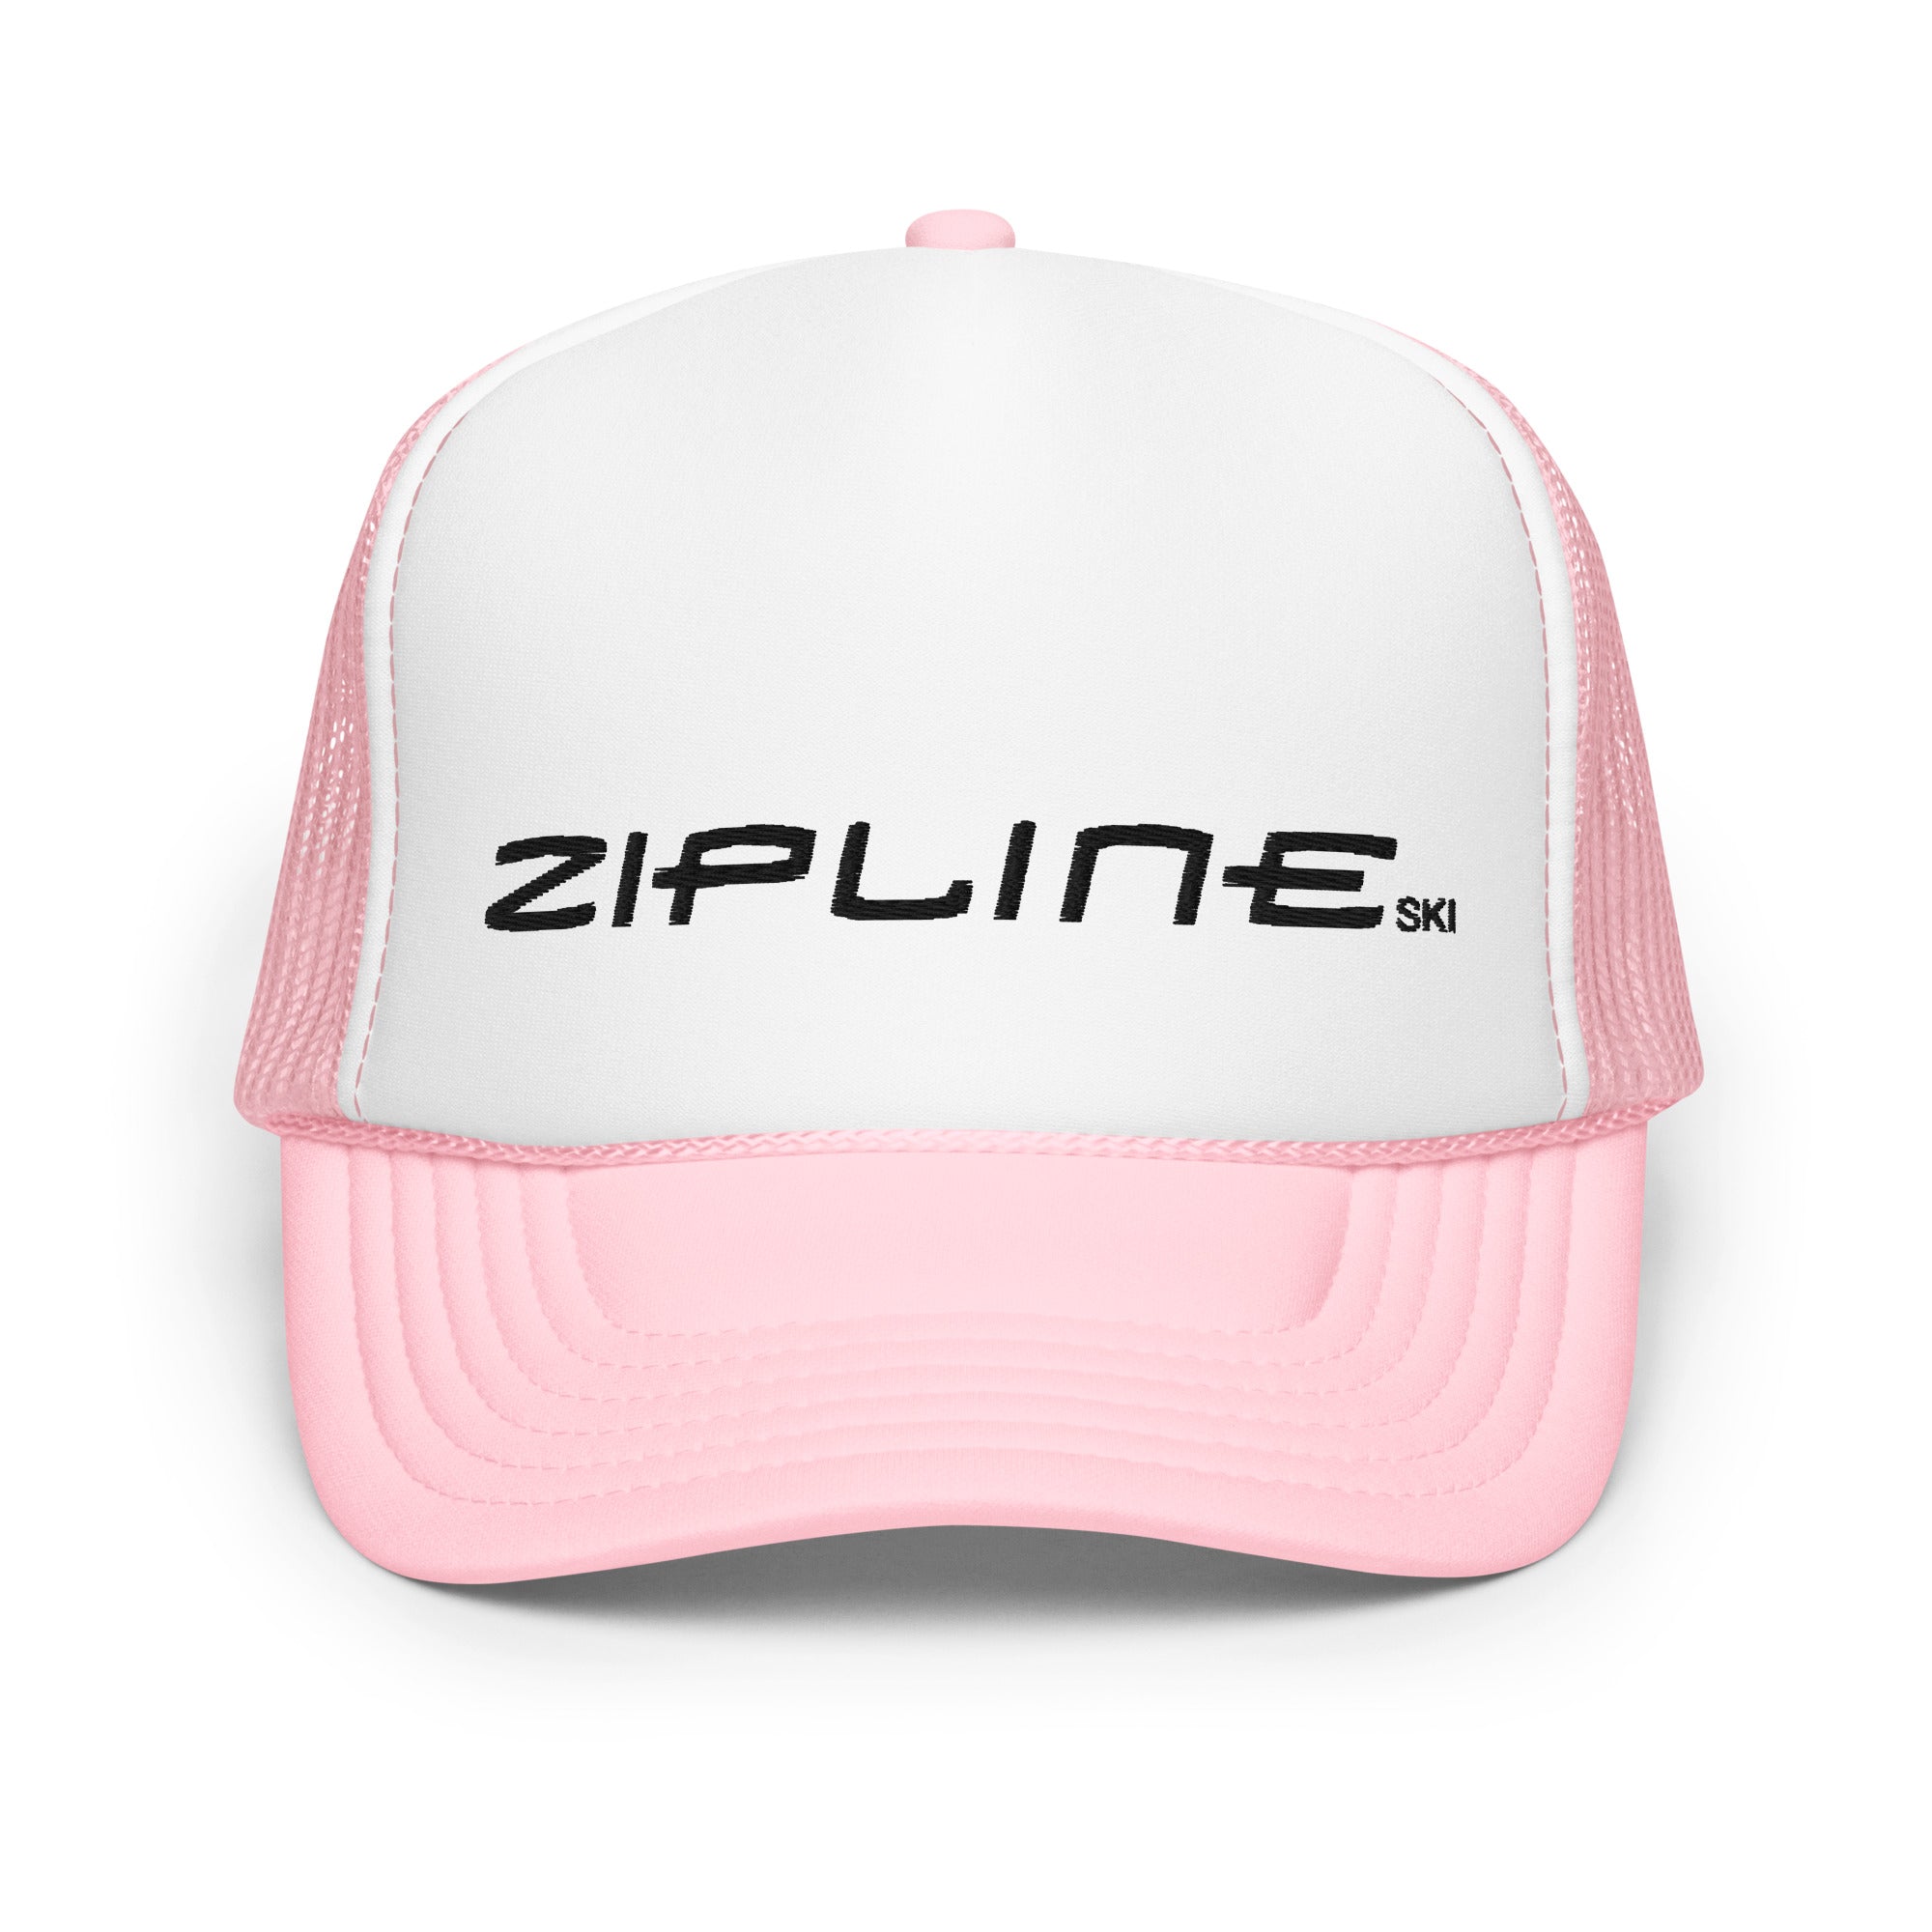 Zipline Foam trucker hat - ZiplineSki